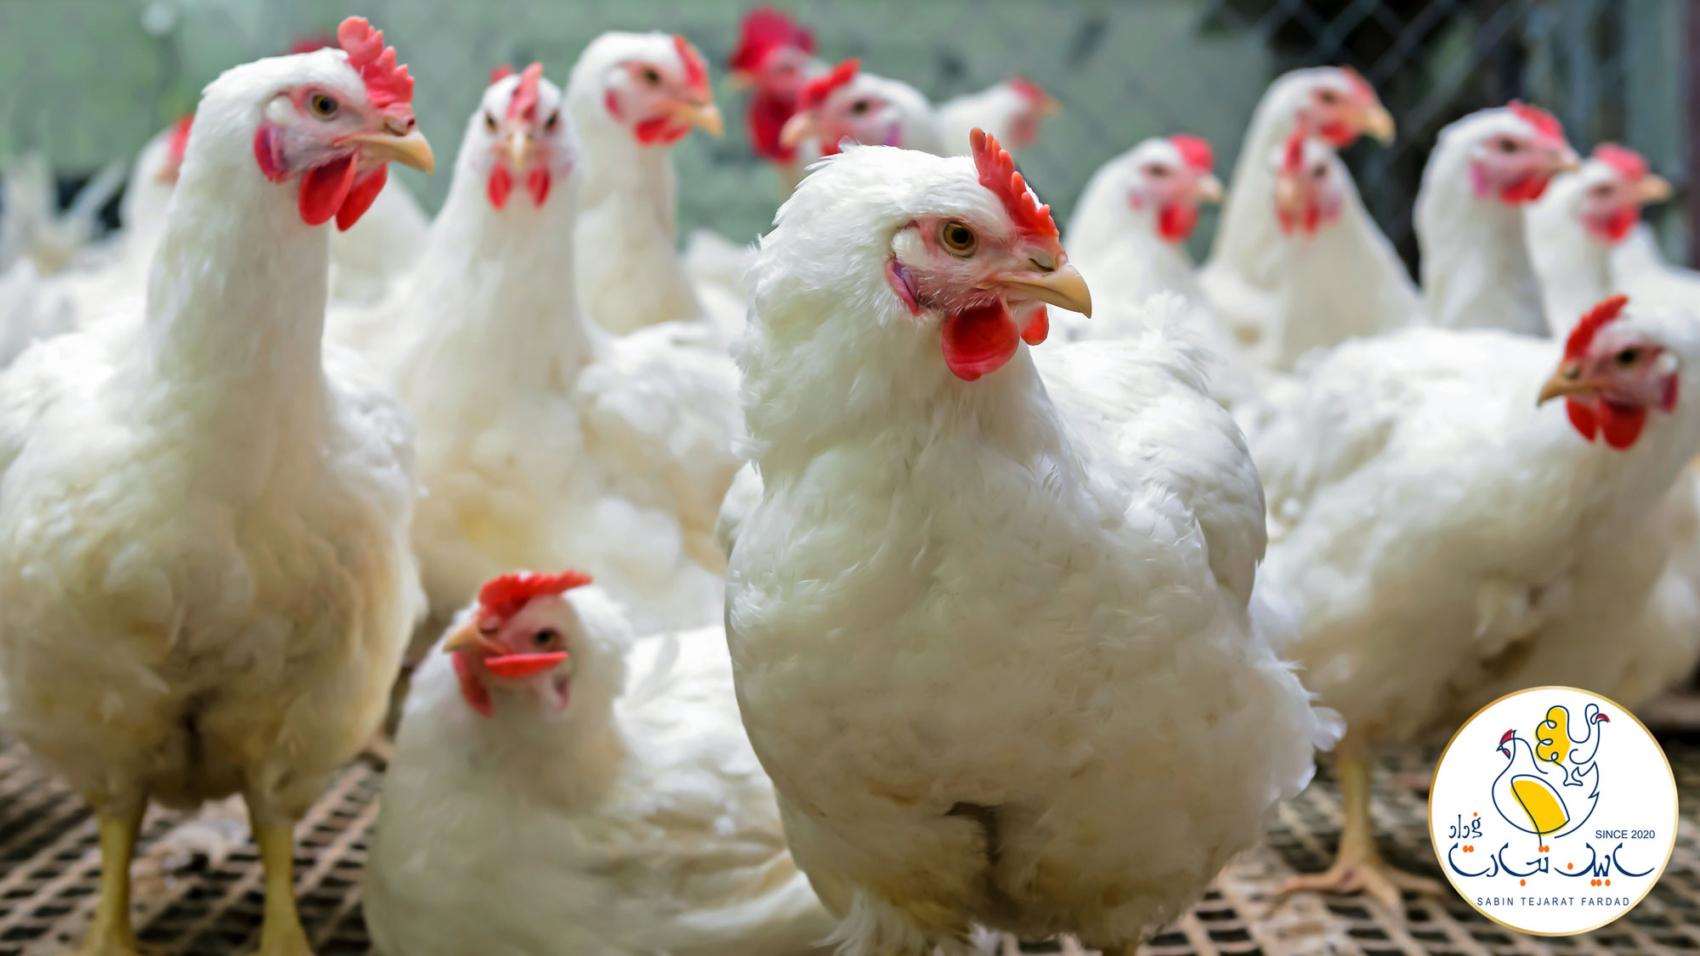 بزرگترین صنایع غذایی در ایران صنعت مرغ و تخم مرغ است